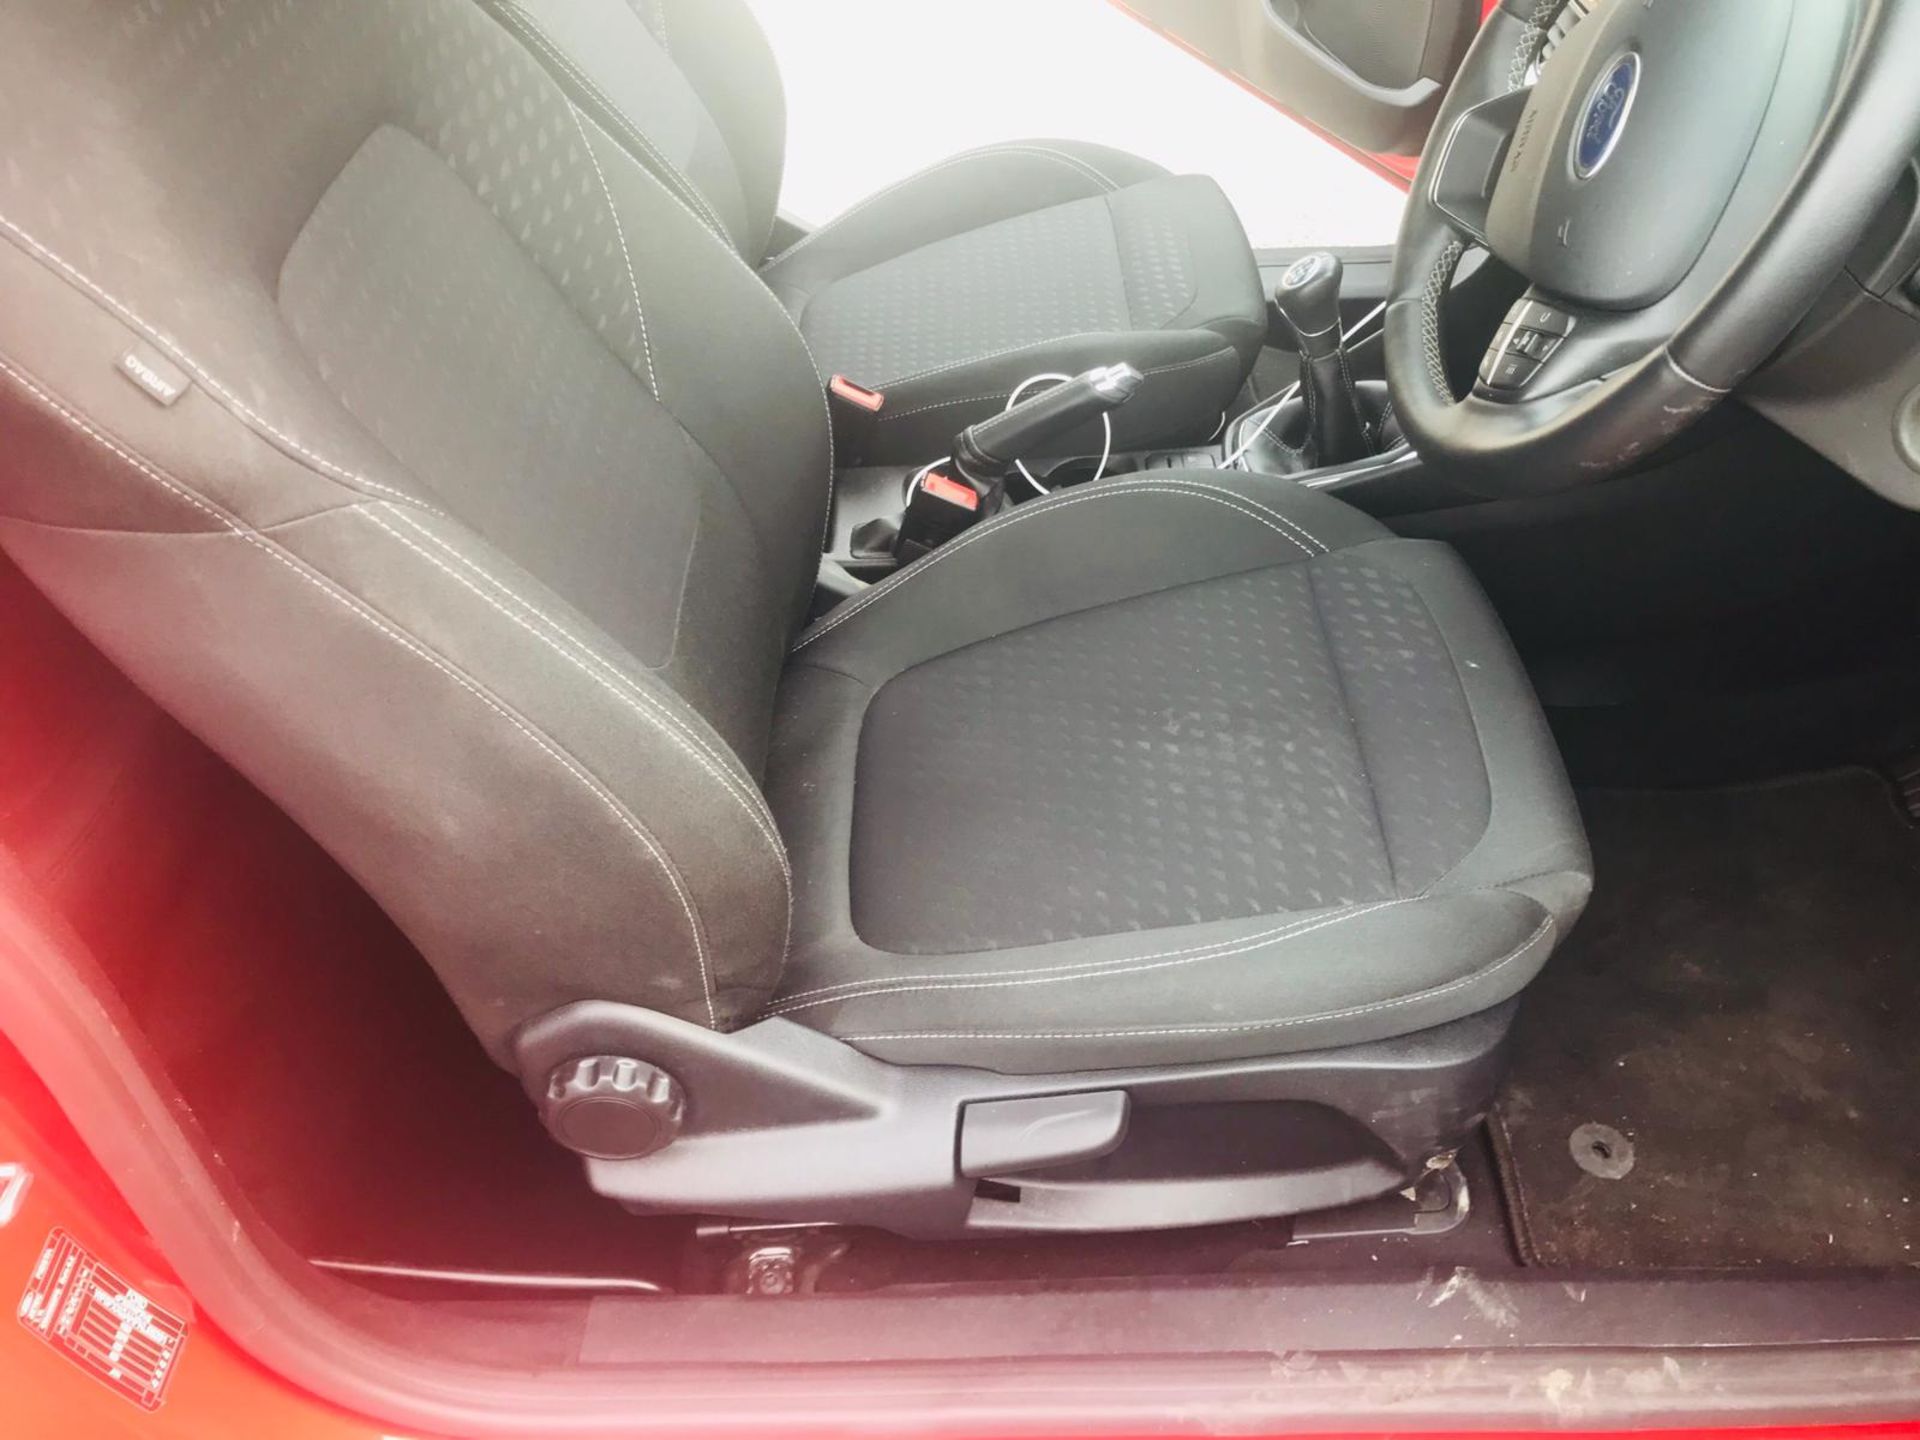 (RESERVE MET) Ford Fiesta 1.0 Zetec 3dr Hatchback - 2019 19 Reg - 1 Owner From New - ONLY 14K MILES - Image 13 of 30